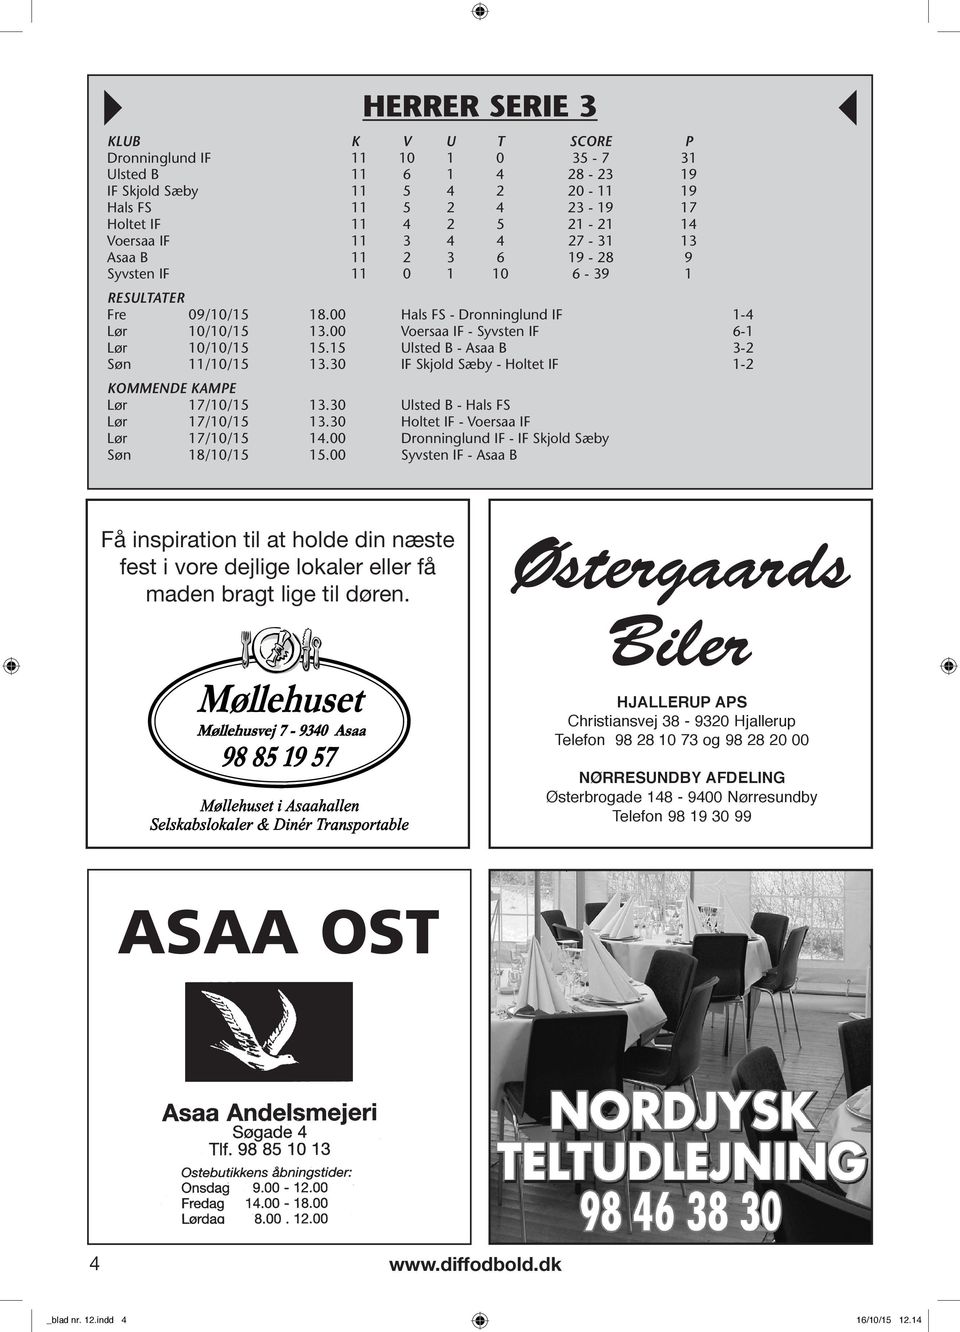 15 Ulsted B - Asaa B 3-2 Søn /10/15 13.30 IF Skjold Sæby - Holtet IF 1-2 KOMMENDE KAMPE Lør 17/10/15 13.30 Ulsted B - Hals FS Lør 17/10/15 13.30 Holtet IF - Voersaa IF Lør 17/10/15 14.